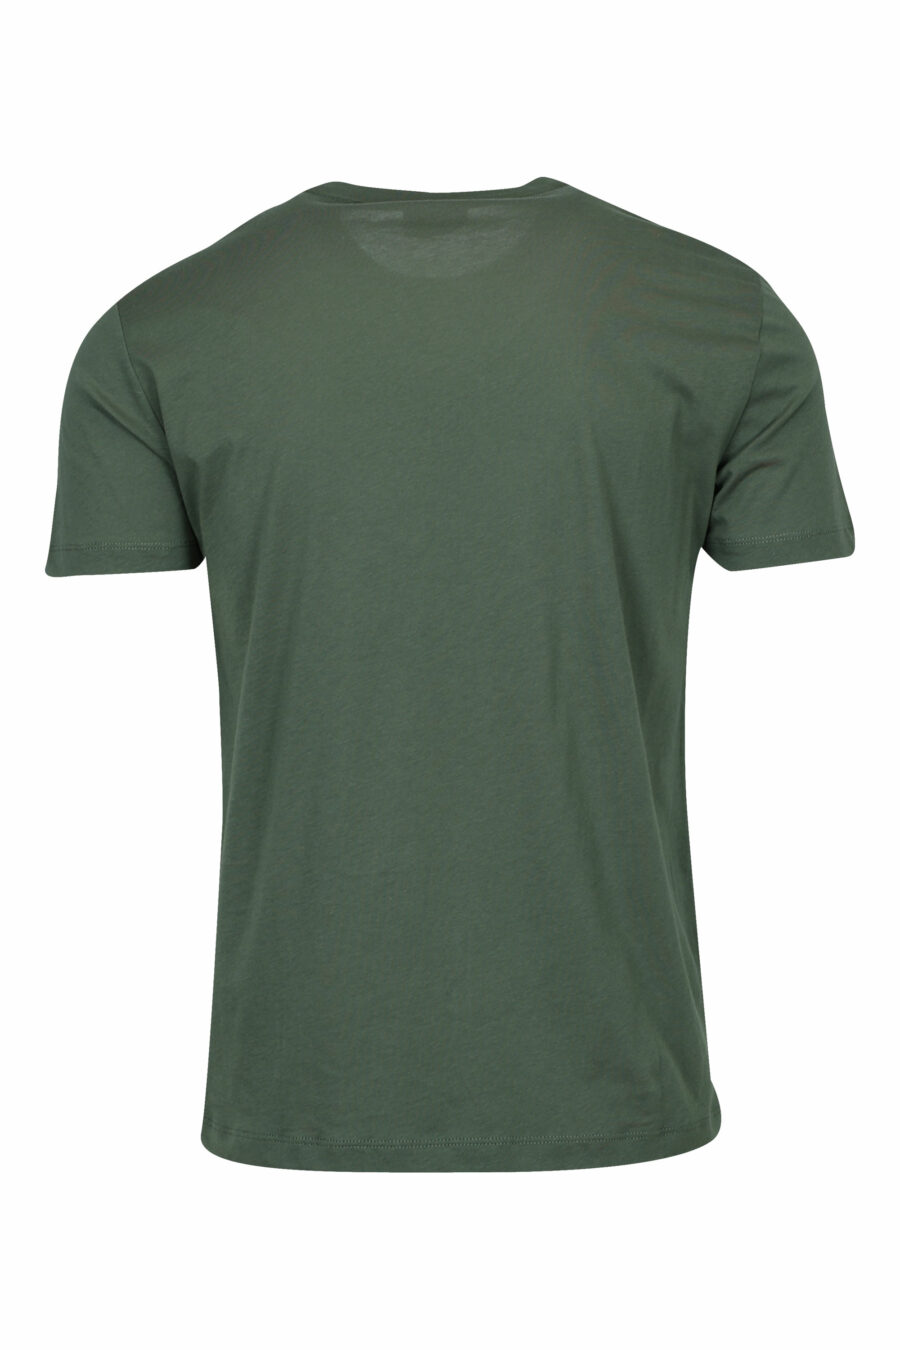 Grünes T-Shirt mit schwarzem "lux identity"-Minilogo auf goldener Platte - 8058947475506 1